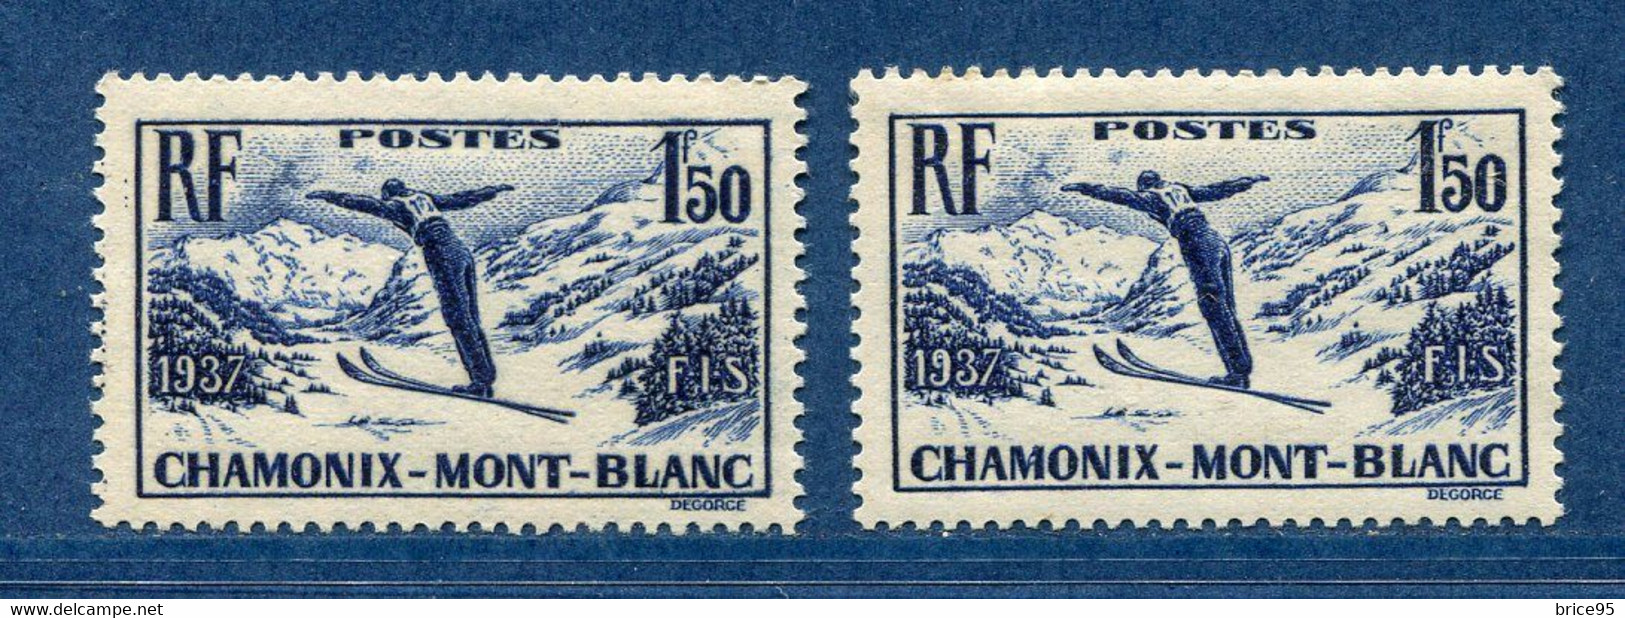 ⭐ France - Variété - YT N° 334 - Couleurs - Papier Jaunatre - Neuf Sans Charnière - 1937 ⭐ - Nuevos